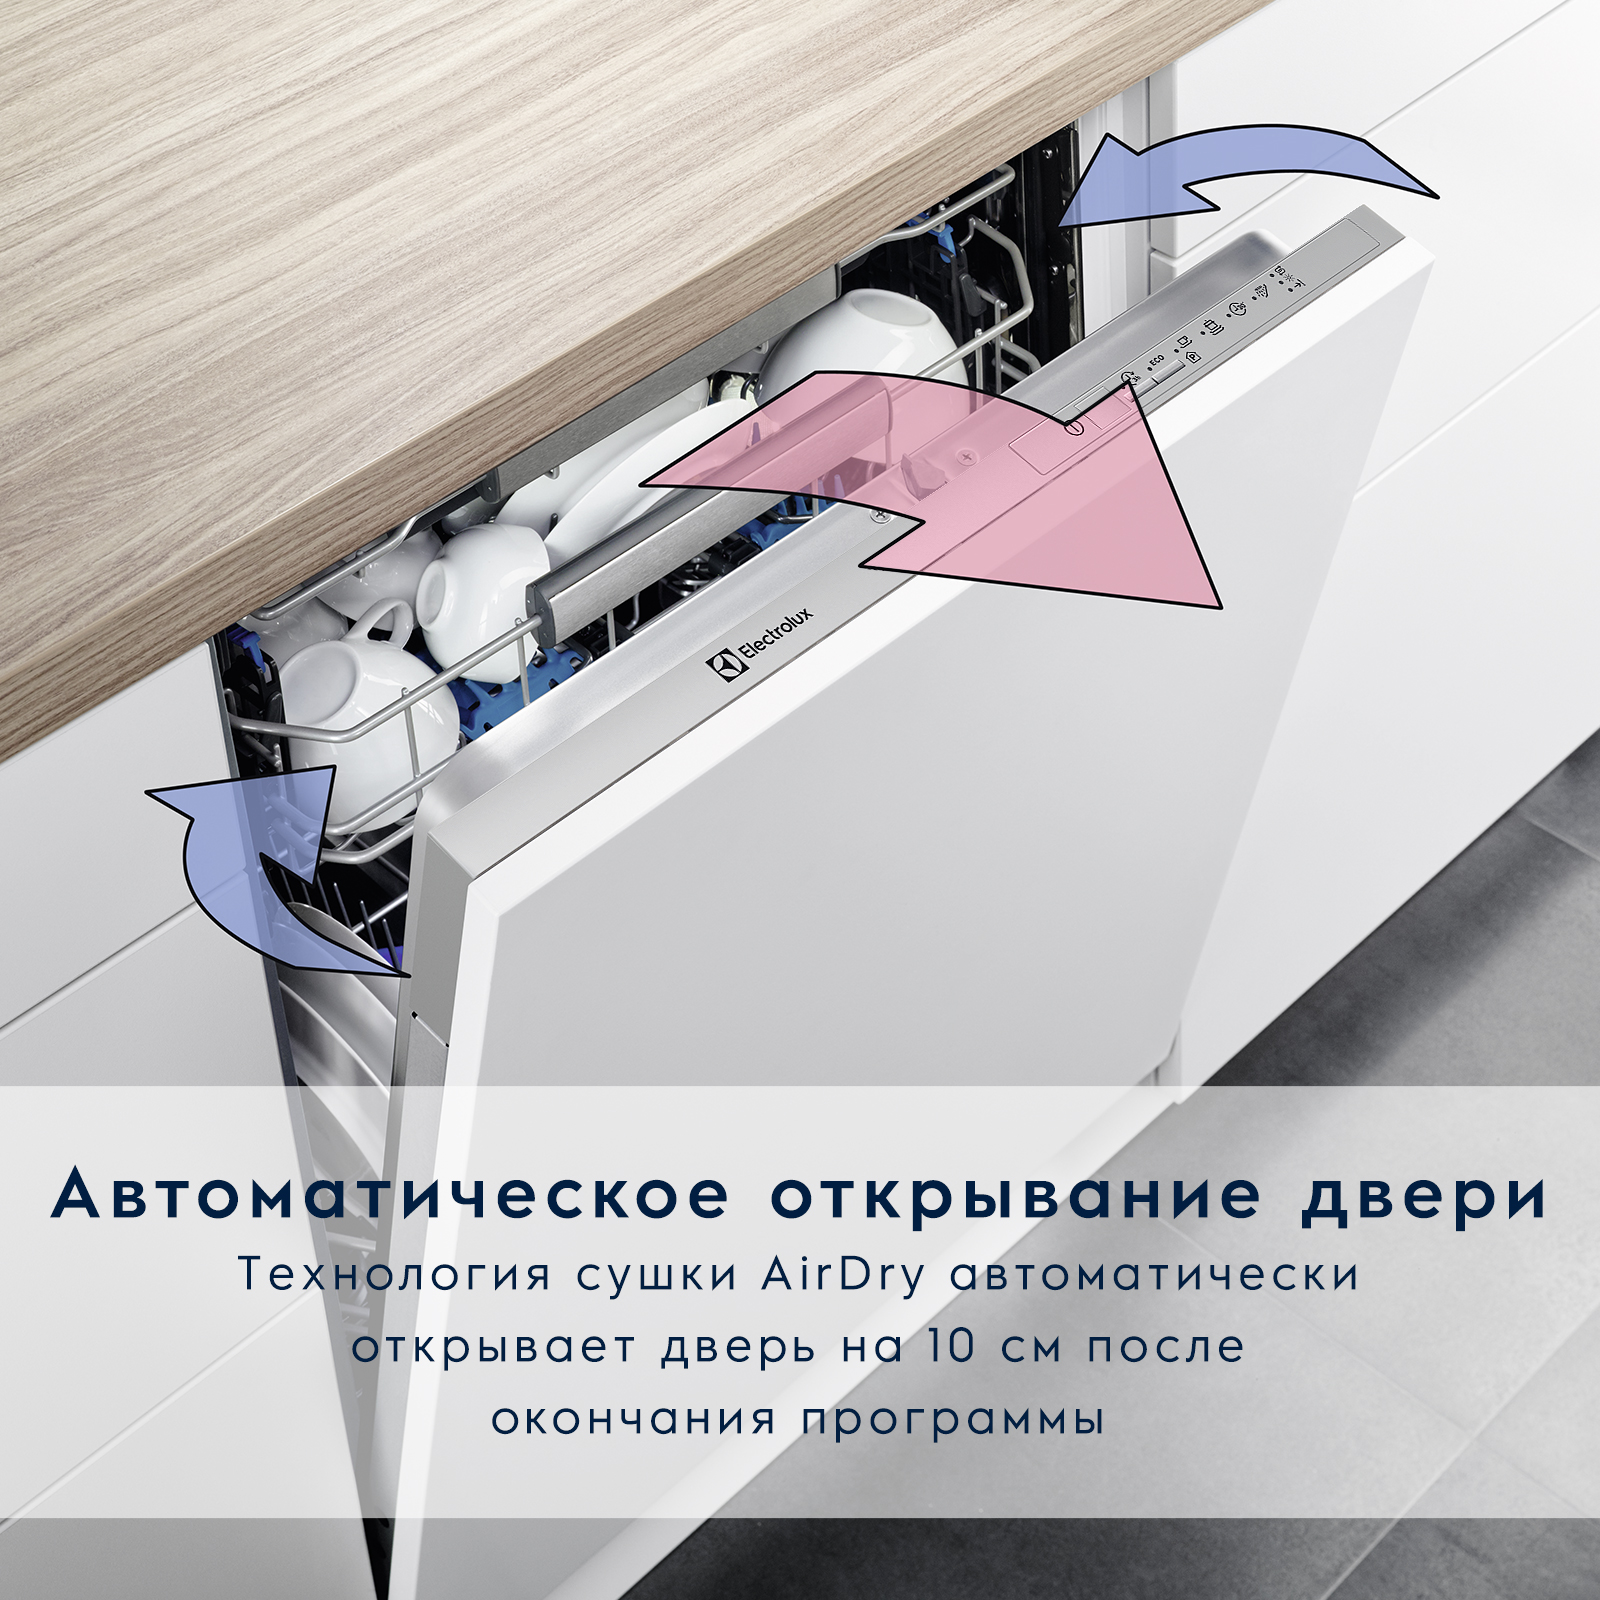 Встраиваемая посудомоечная машина Electrolux Intuit 300 EEA917100L